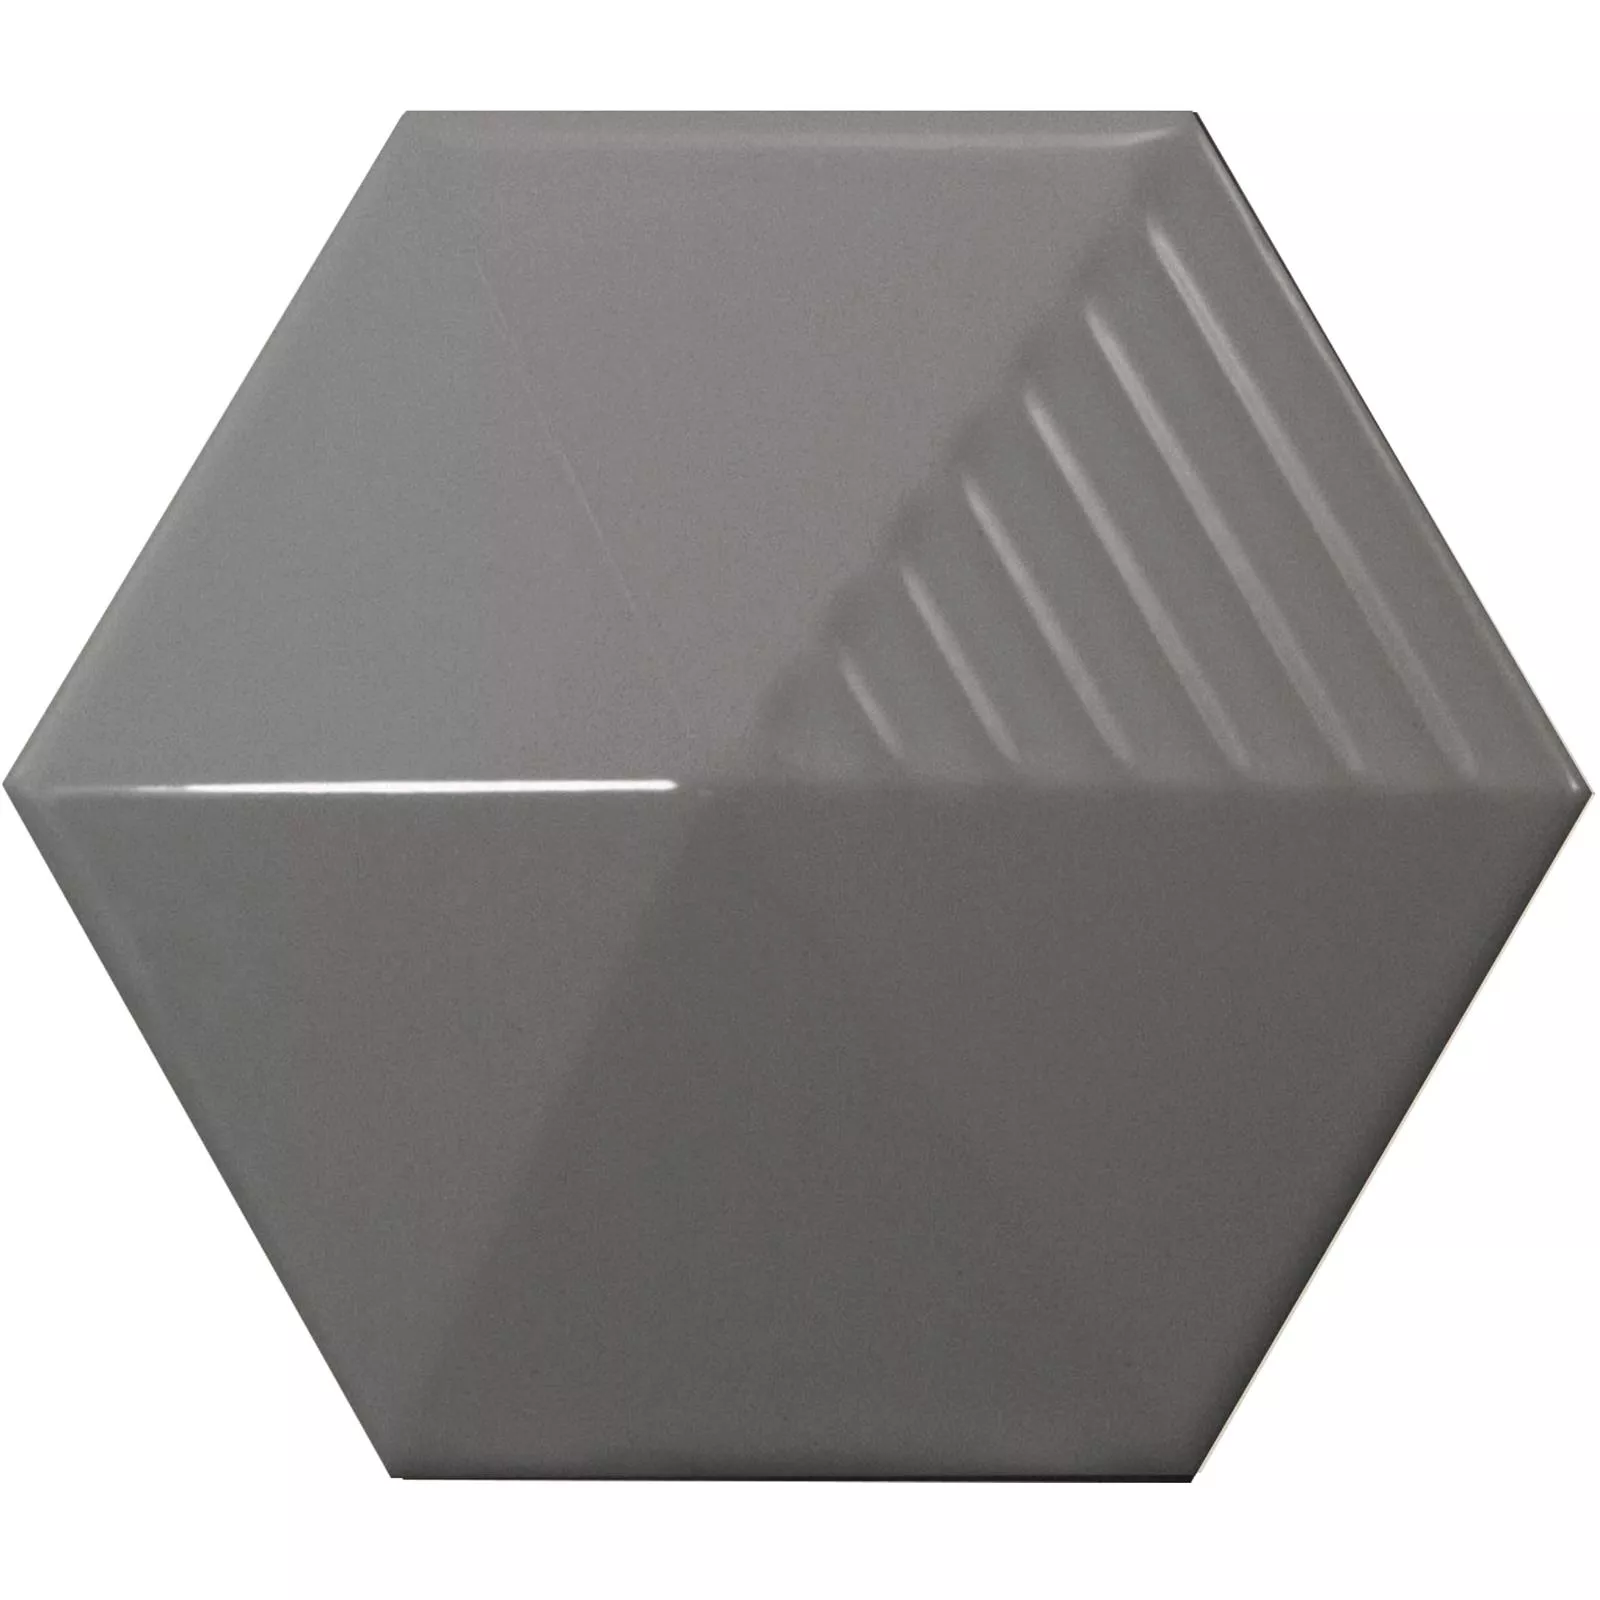 Muestra Revestimientos Rockford 3D Hexagonales 12,4x10,7cm Gris